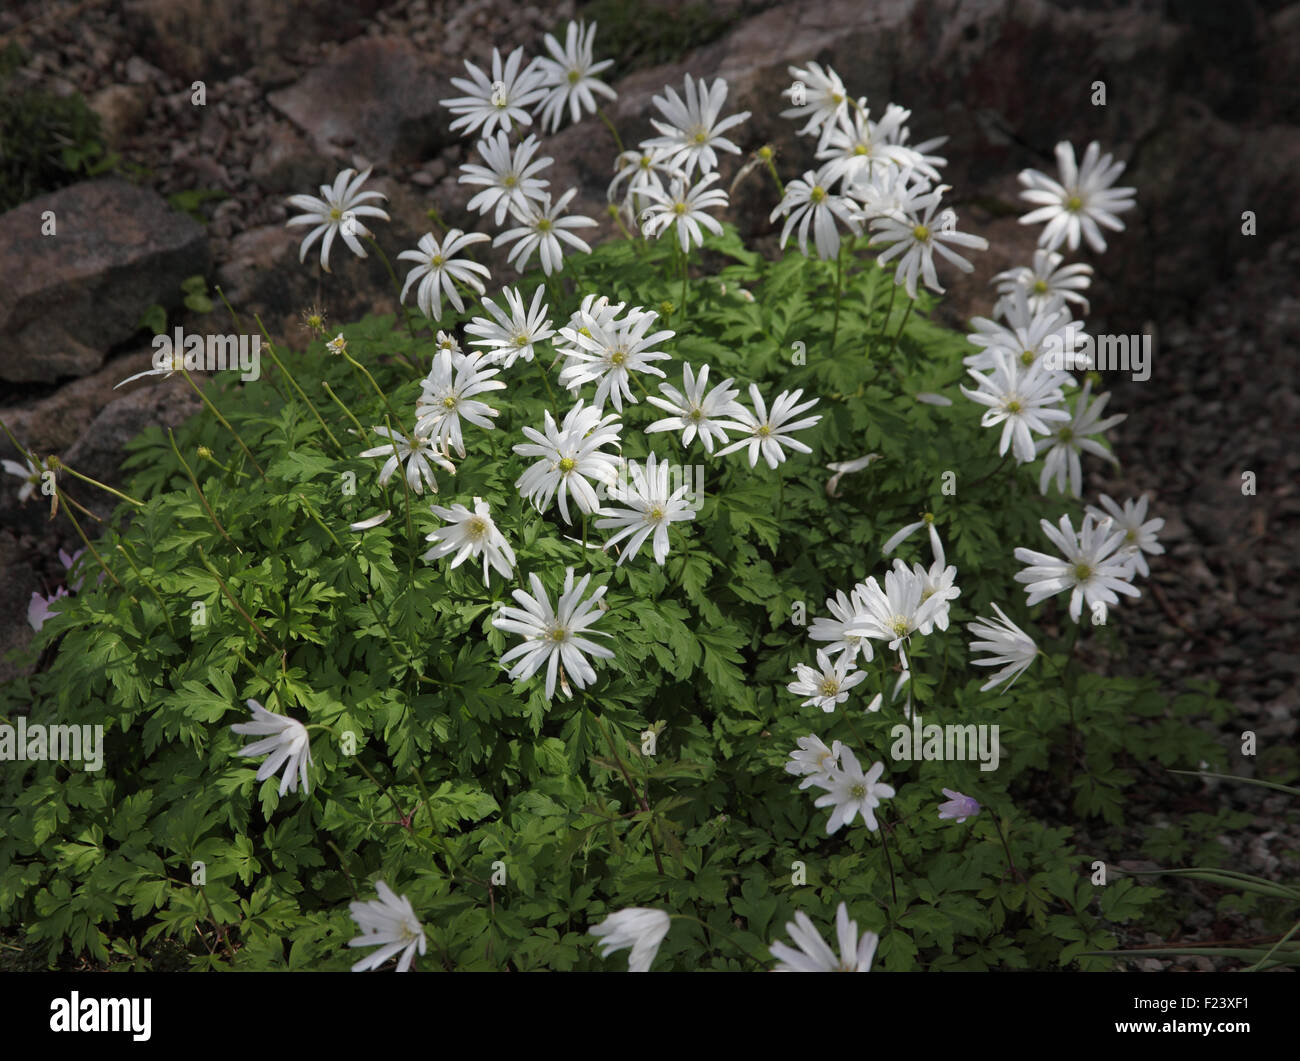 Anemone blanda 'White Splendour' plants in flower Stock Photo